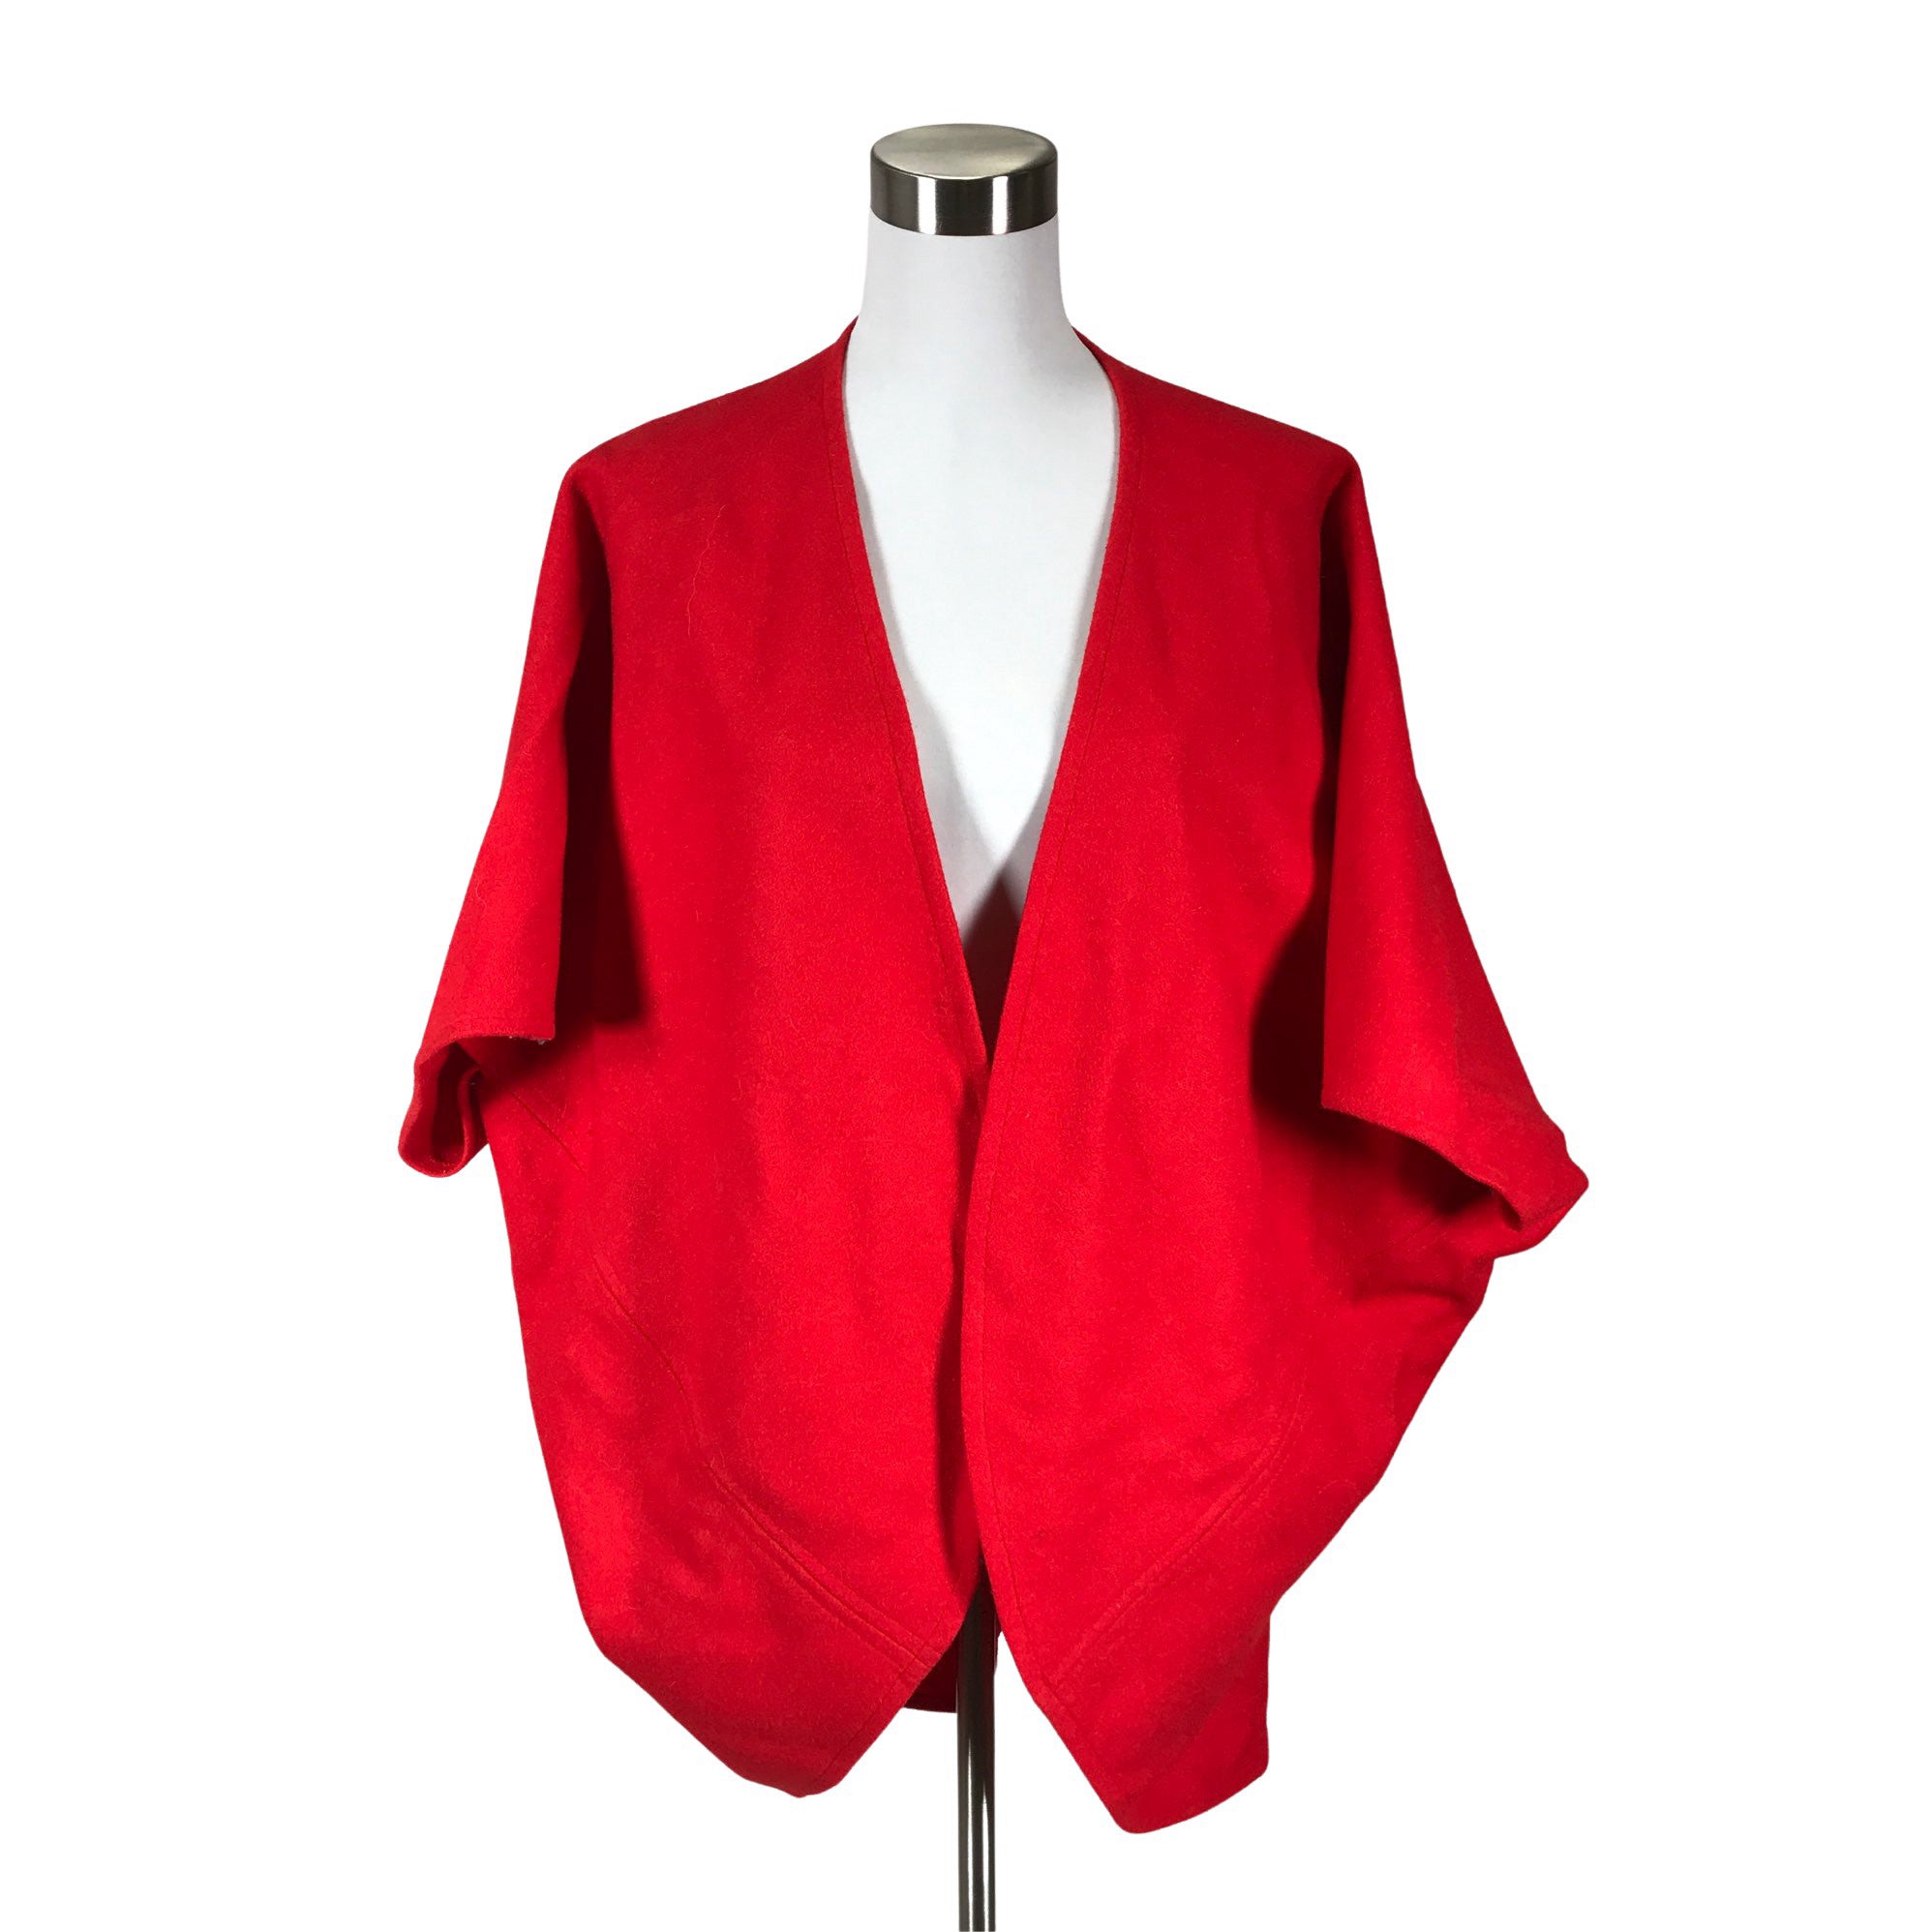 Women's Margareta Forslund Design Cardigan, size 40 (Red) | Emmy